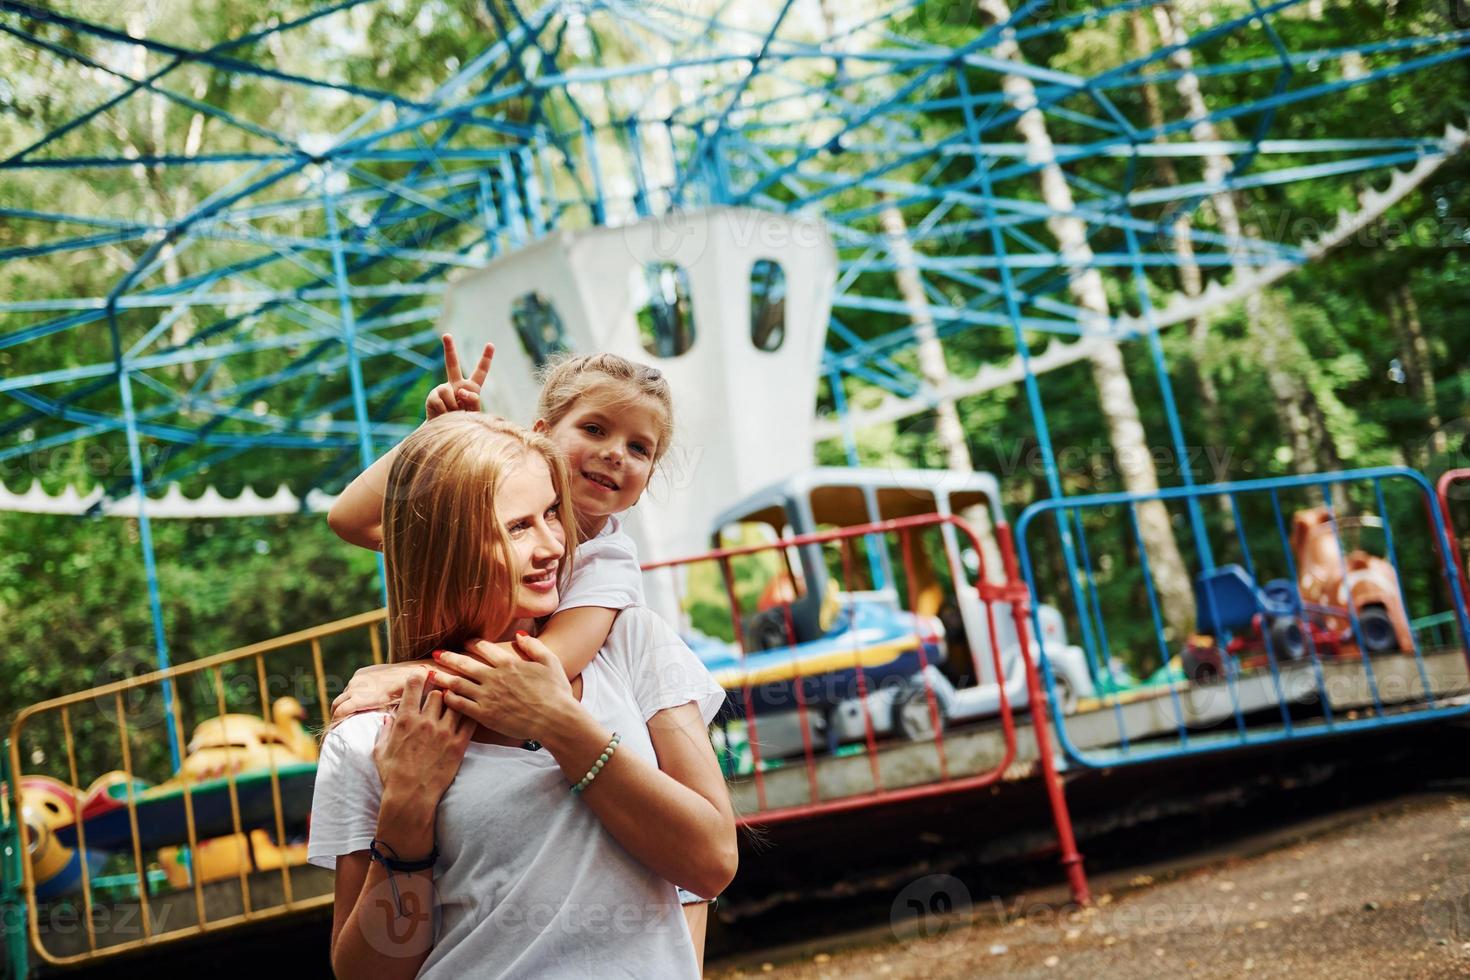 amando um ao outro. menina alegre sua mãe se diverte no parque juntos perto de atrações foto